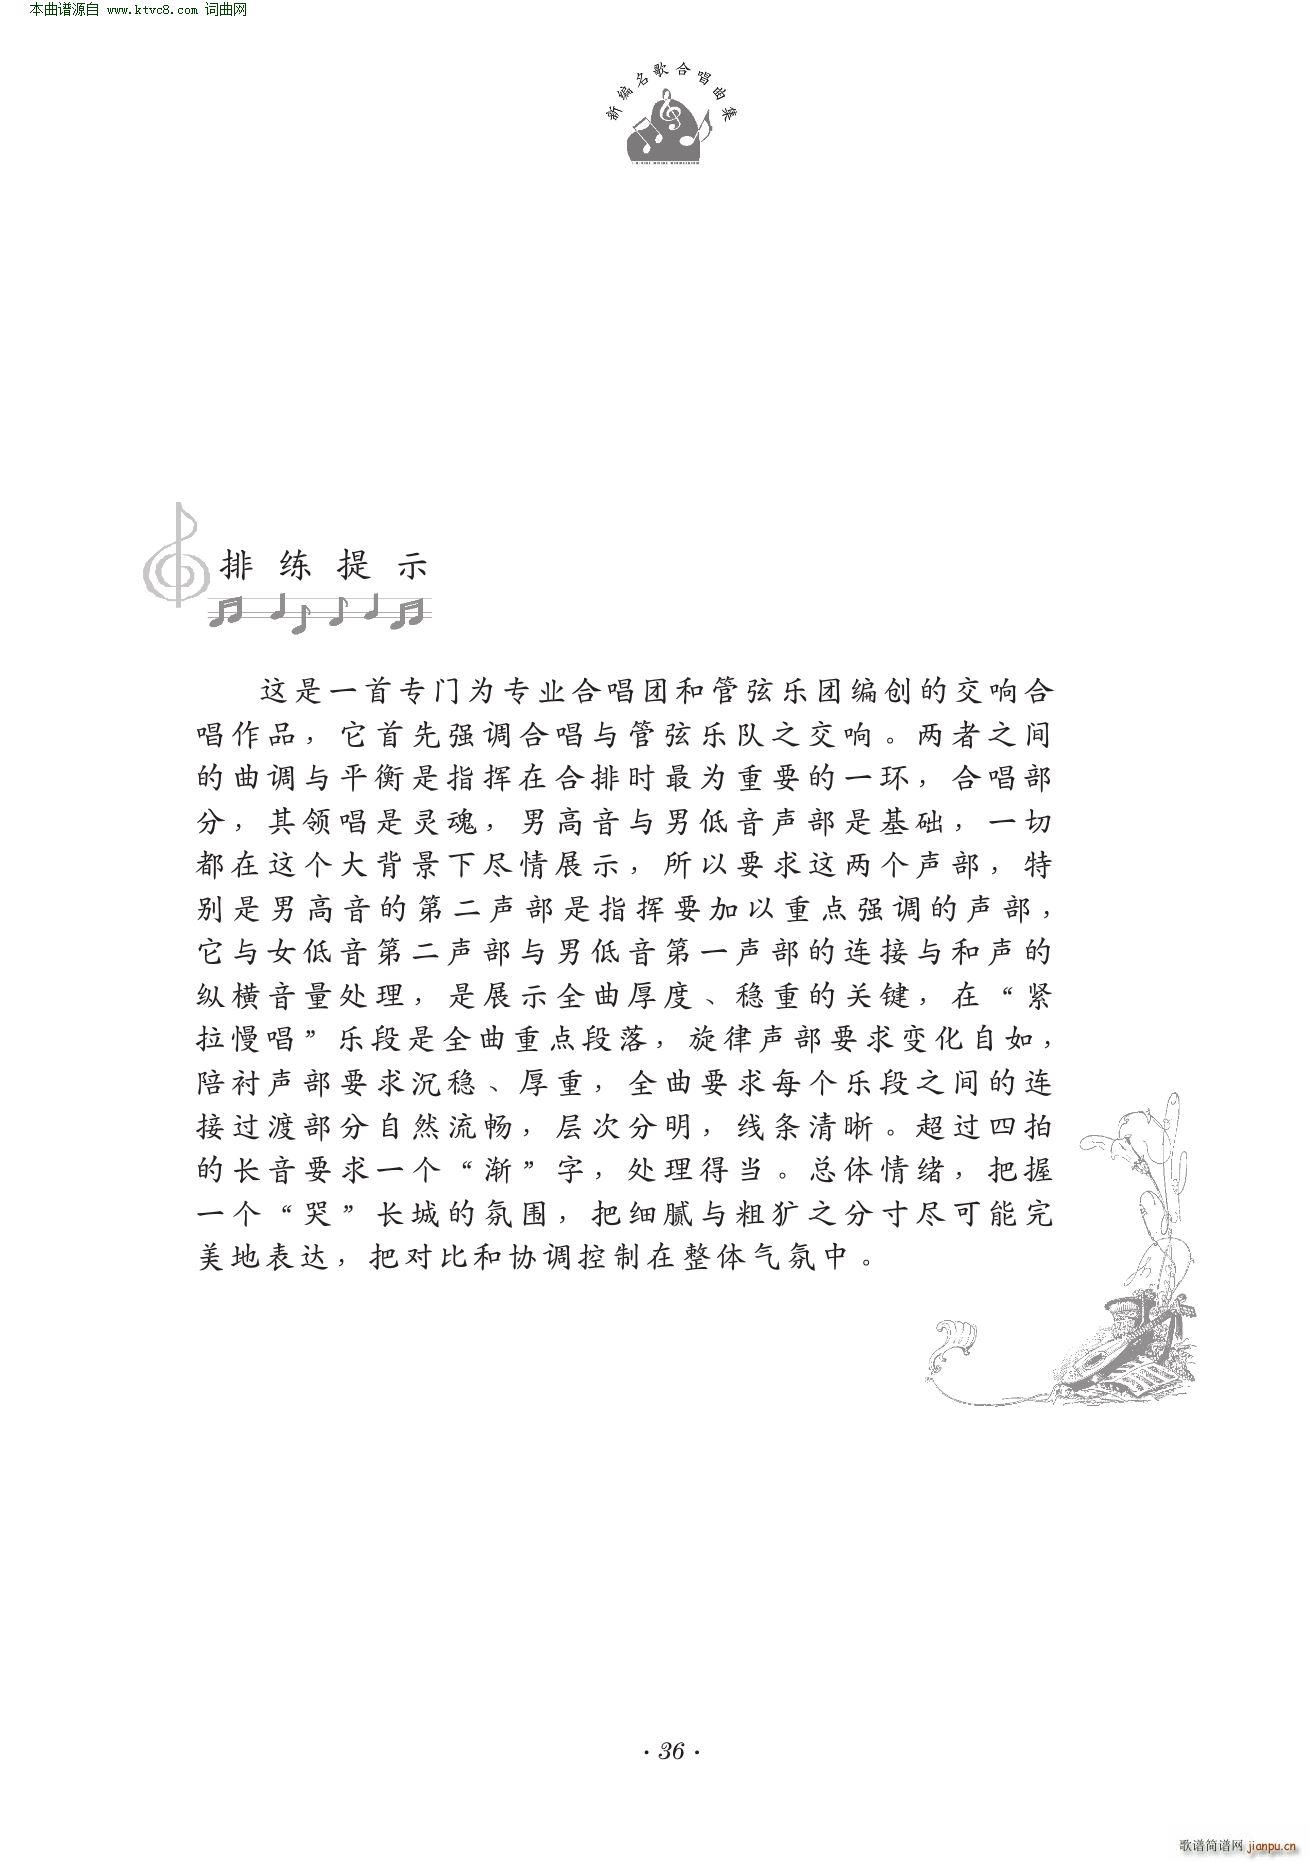 孟姜女 交响合唱(八字歌谱)11